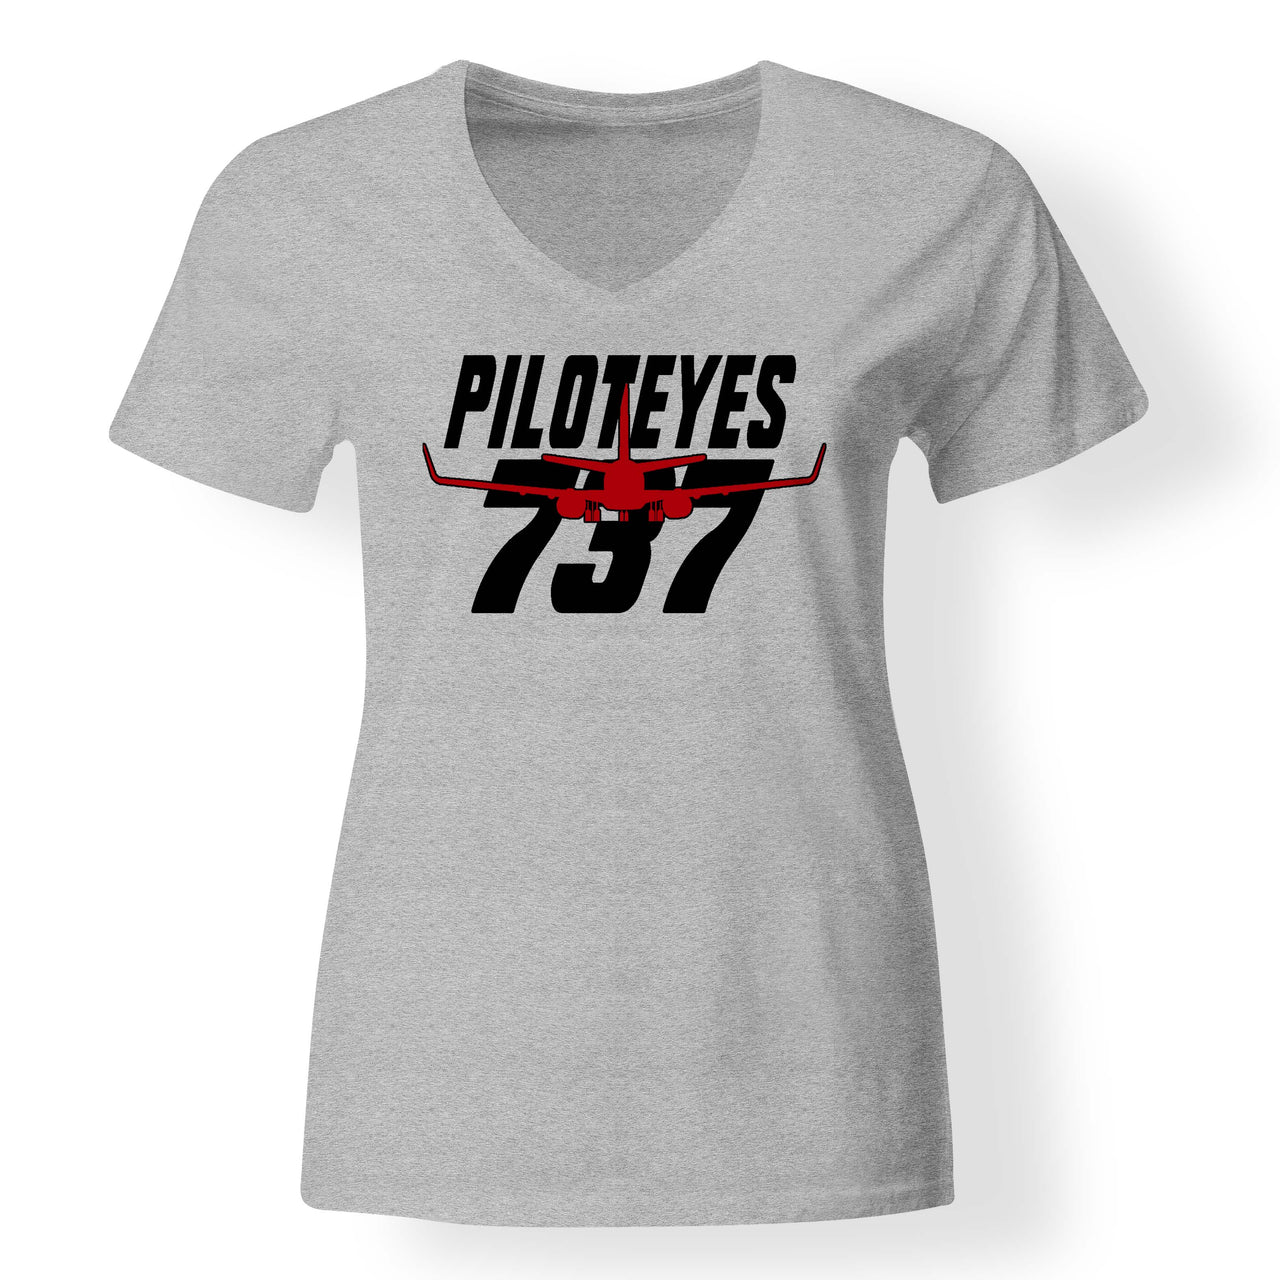 Amazing Piloteyes737 Designed V-Neck T-Shirts